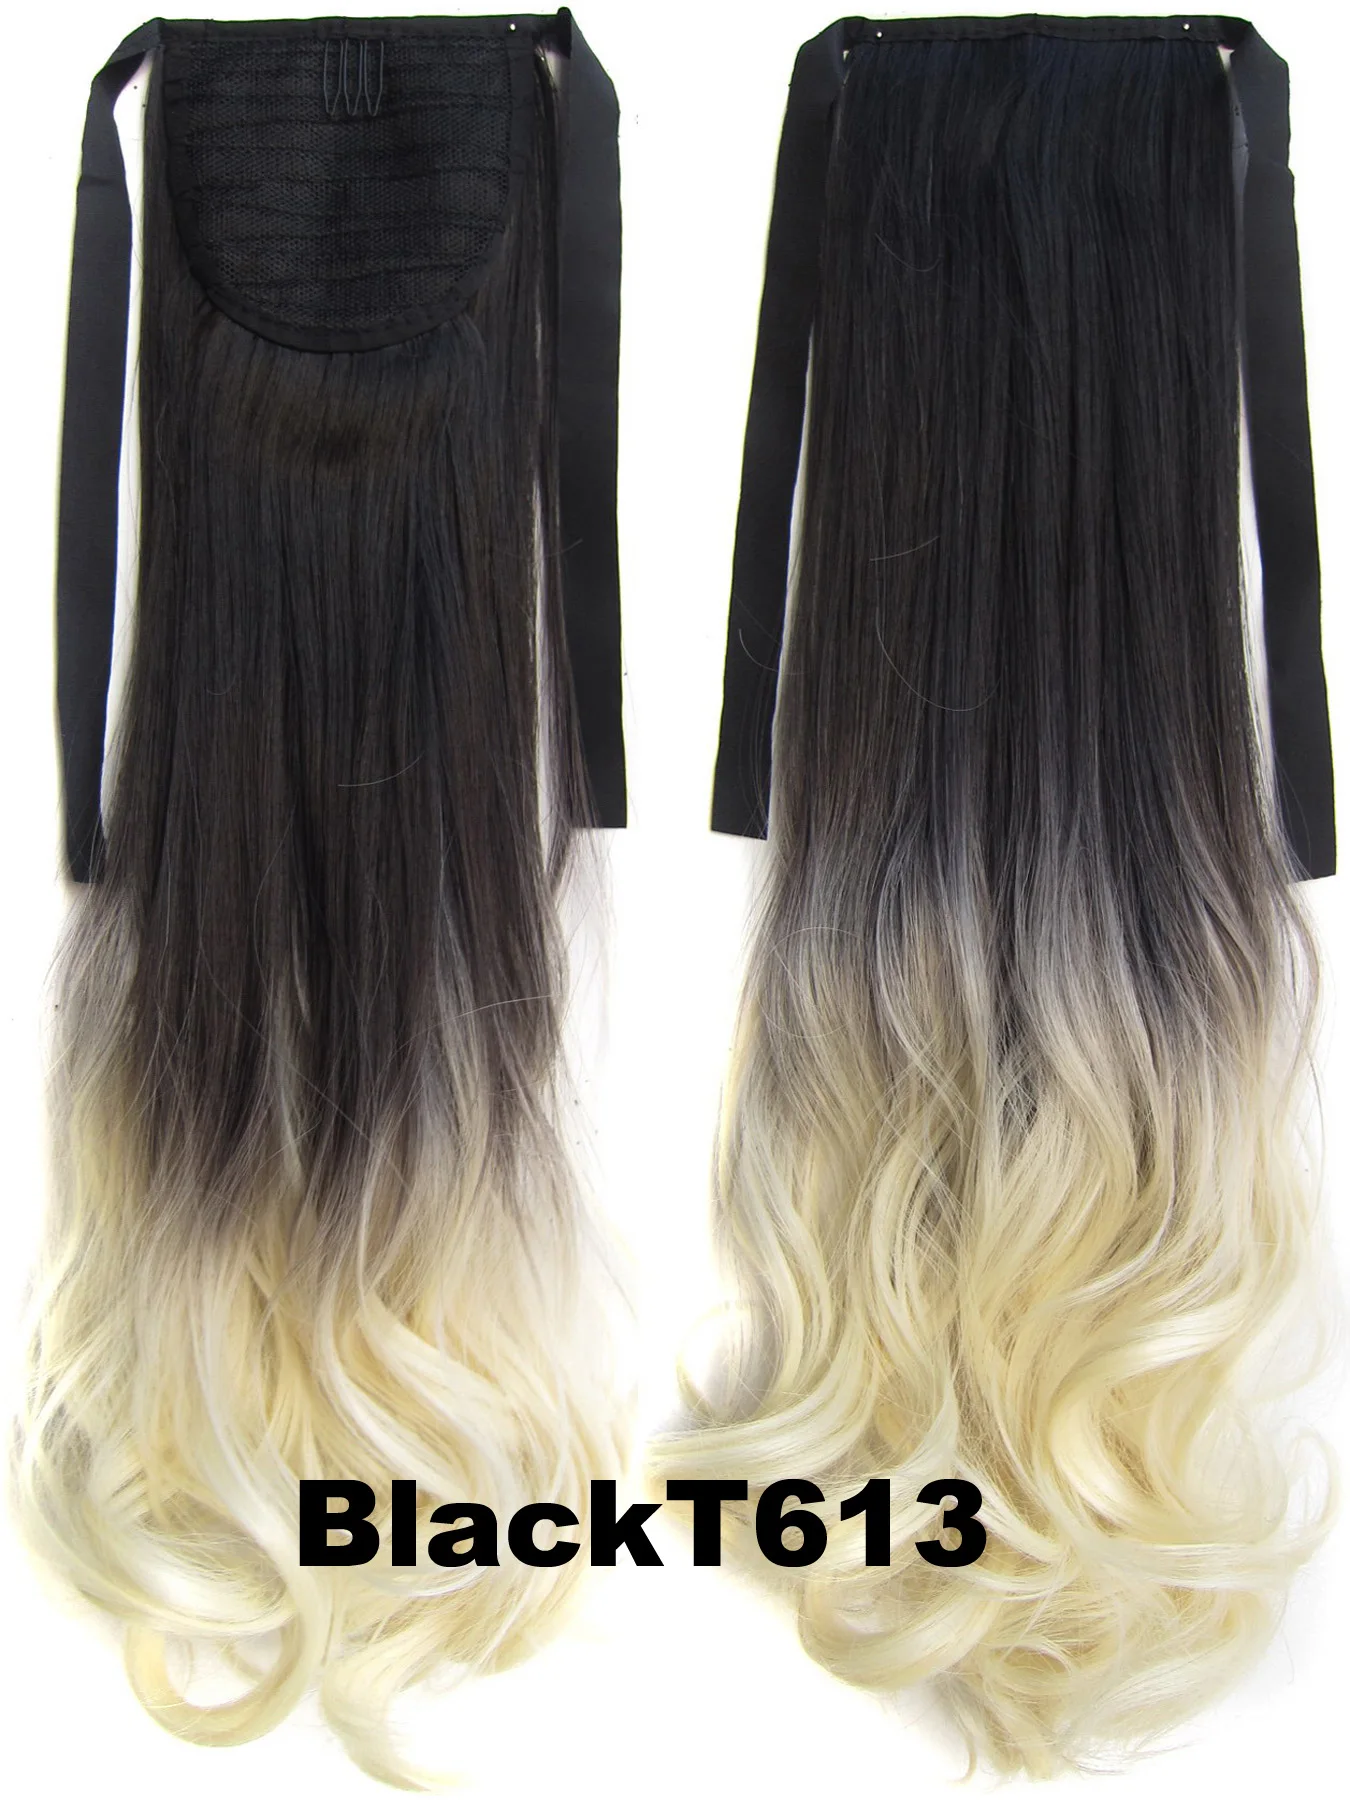 Similler вьющиеся волосы для наращивания вокруг конского хвоста, синтетические волосы для женщин, черный, розовый цвет - Цвет: BlackT613